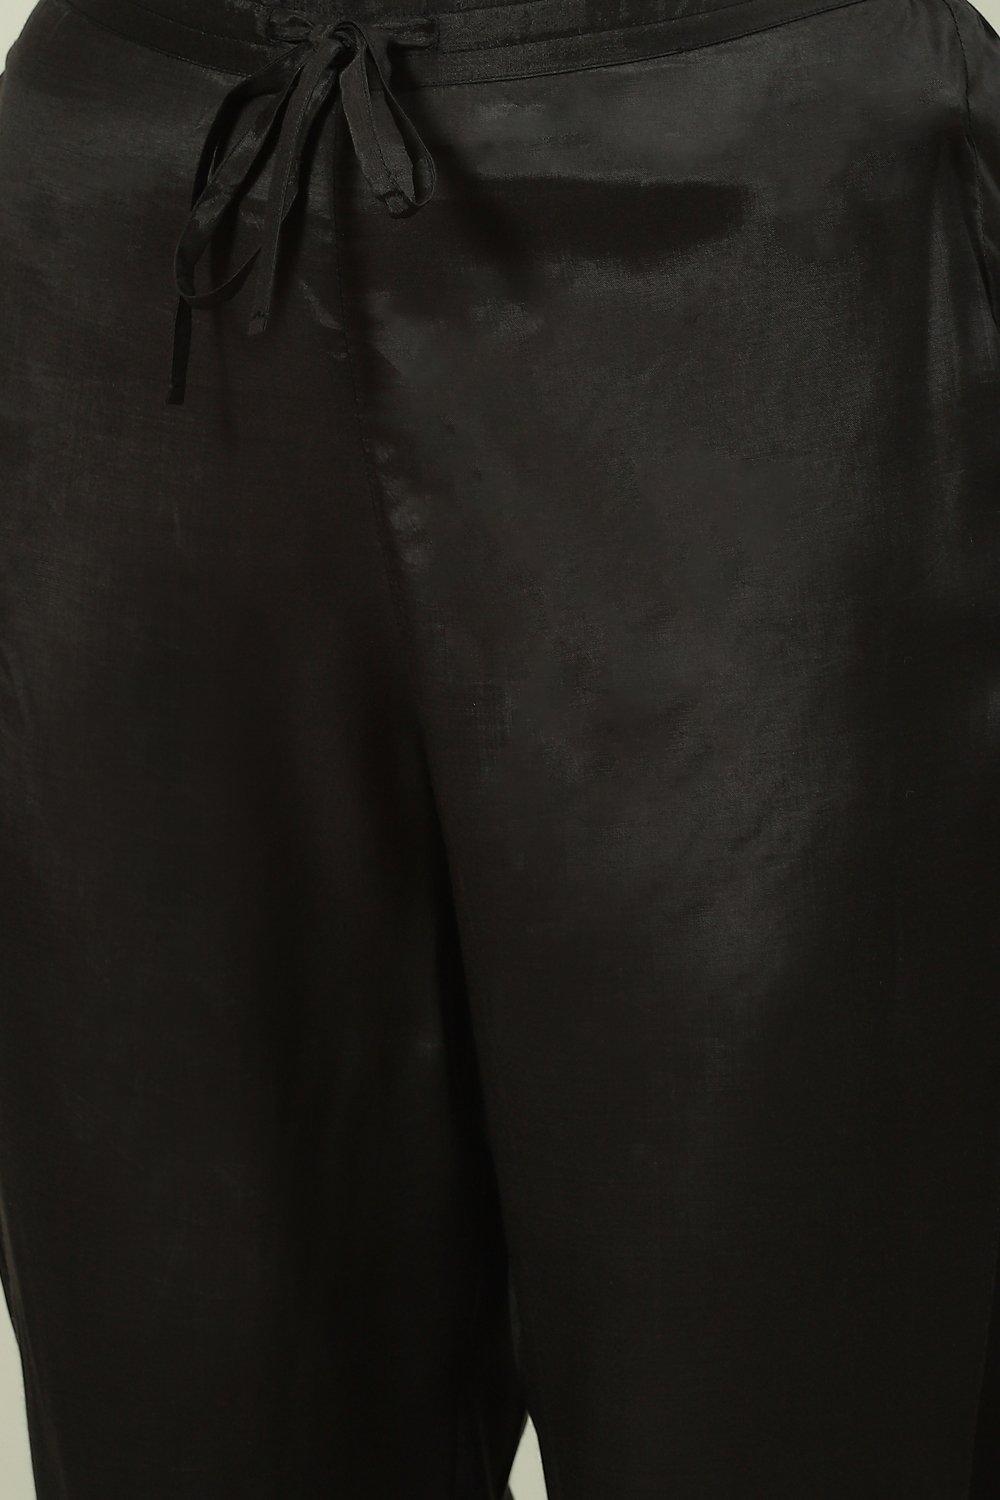 Olive Printed Viscose Straight Kurta Regular Pants Suit Set image number 2